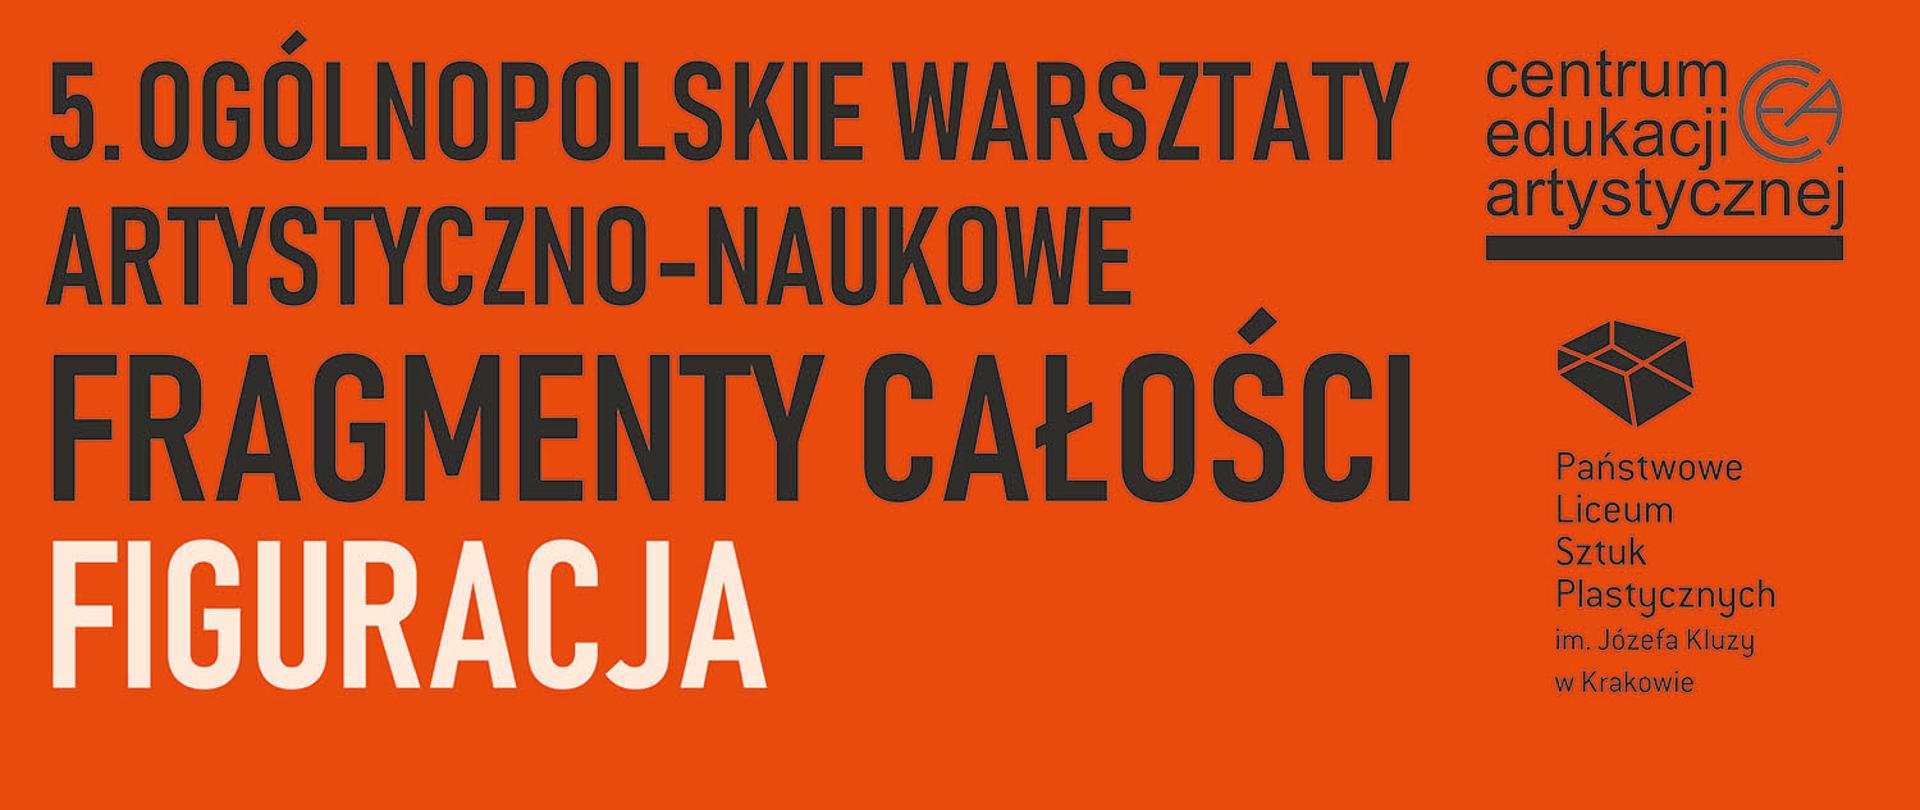 Na pomarańczowym tle napis 5. Ogólnopolskie warsztaty artystyczno-naukowe Fragmenty całości - Figuracja